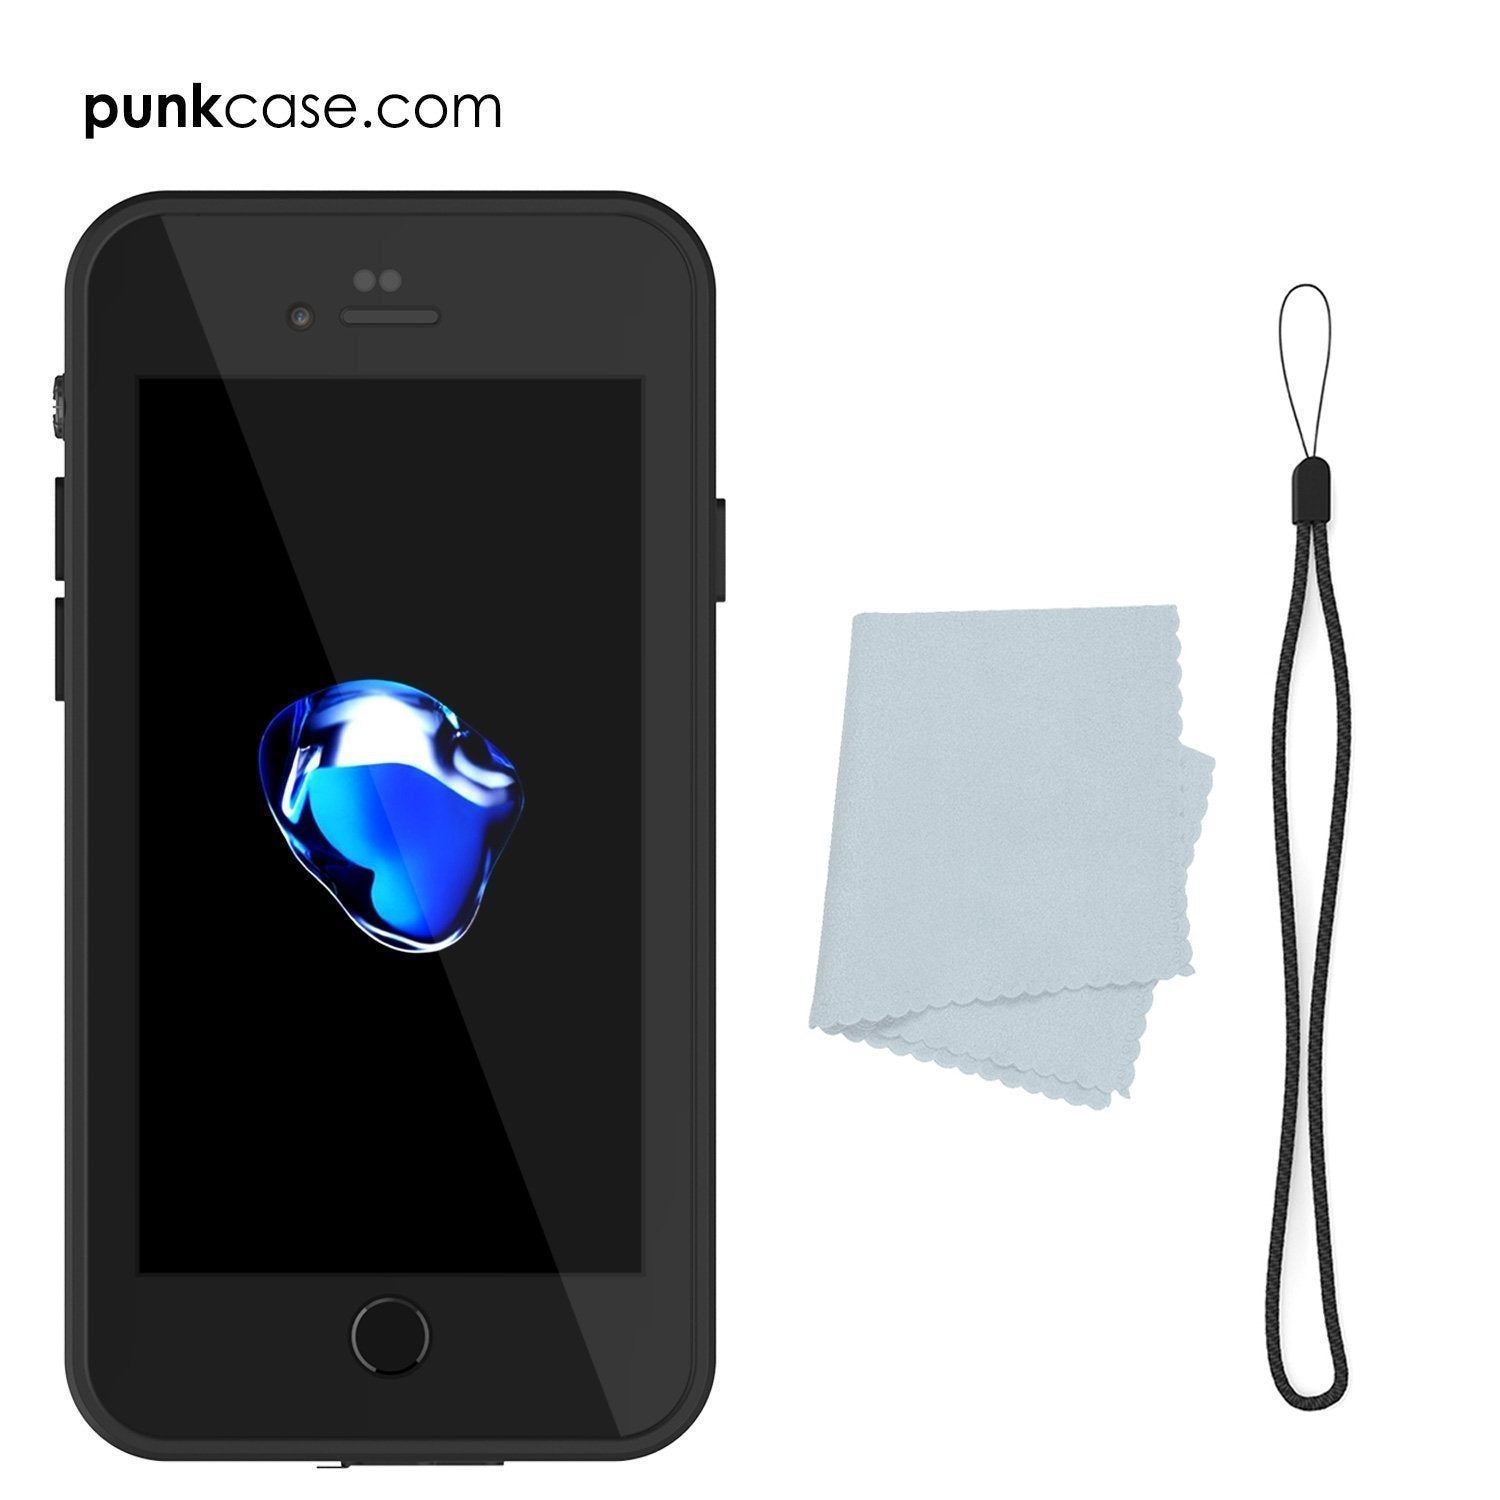 iPhone SE (4.7") Waterproof Case, Punkcase [Clear] [StudStar Series] [Slim Fit] [IP68 Certified][Dirtproof] [Snowproof]